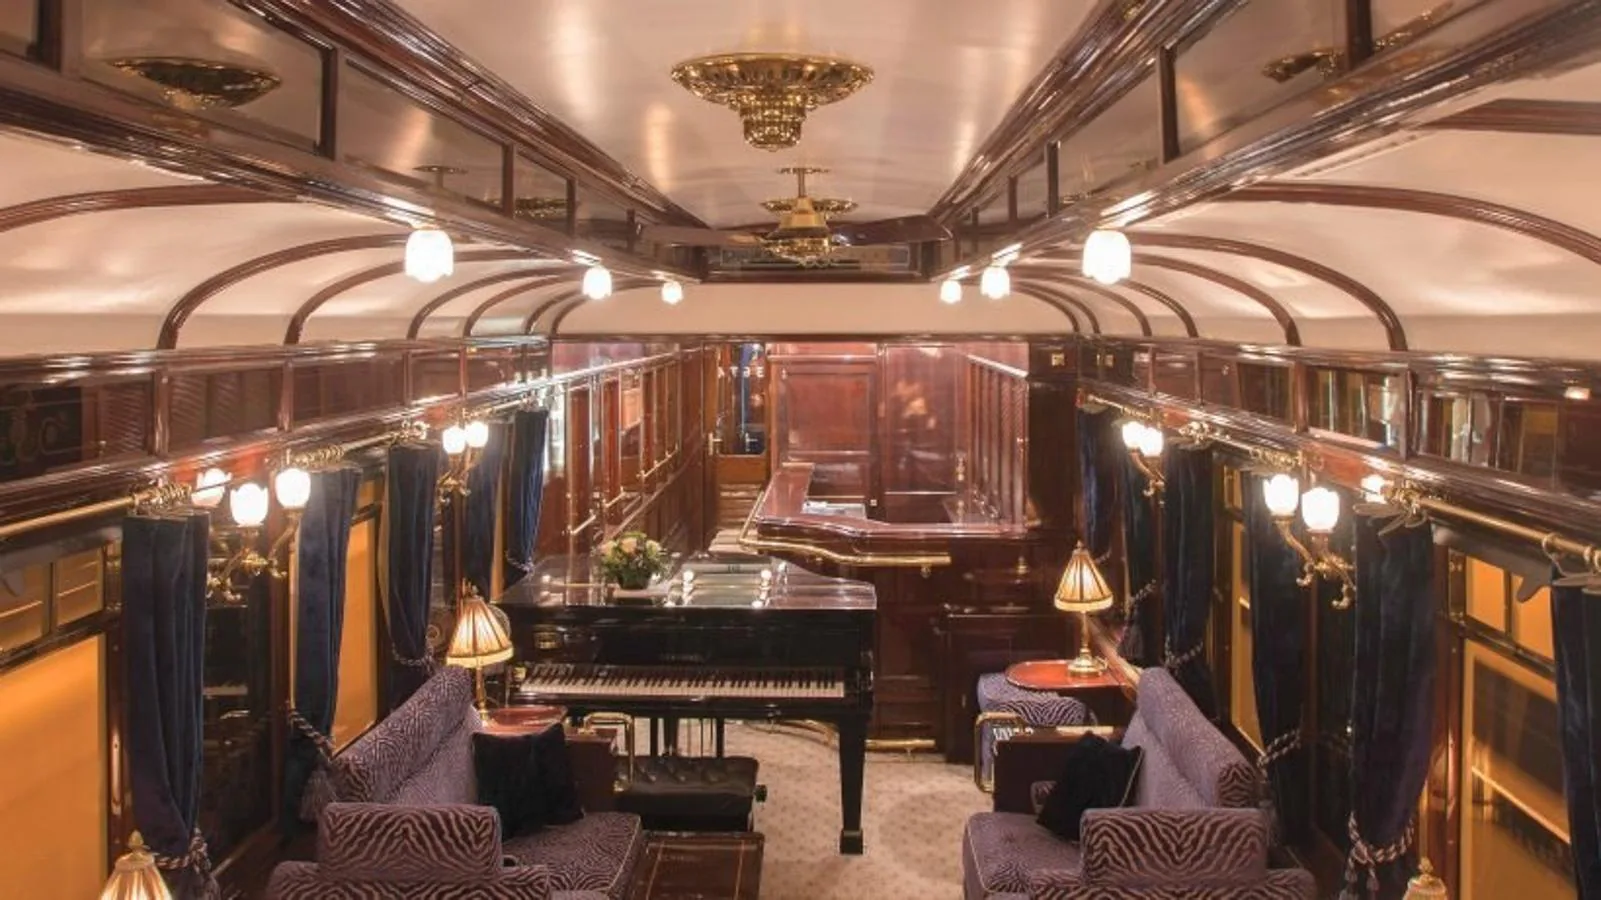 Venice Orient Express. Sus vagones están decorados con mobiliario fabricado con materiales nobles, madera pulida, tapizados y accesorios históricos. El tren transmite el lujo de la Edad de Oro de los viajes